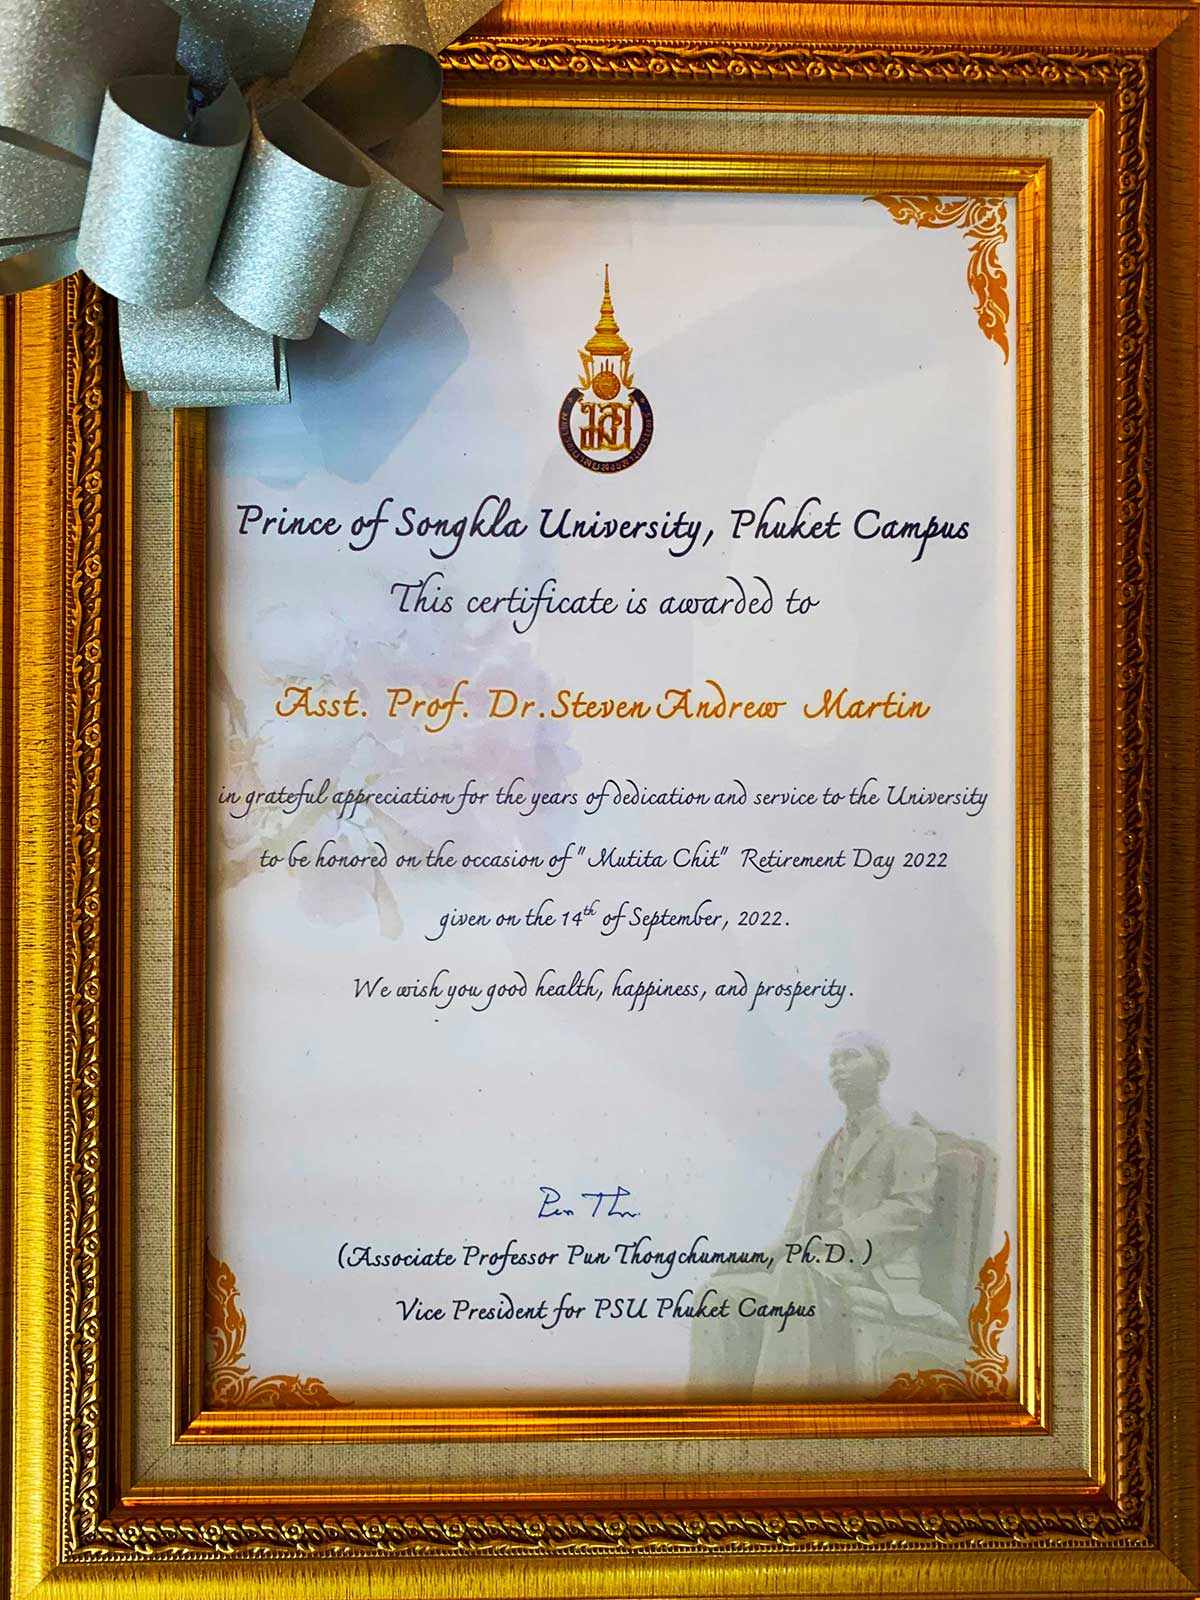 Professor Surf Doctor Steven Andrew Martin | Certificate of Honor for Service and Dedication | Prince of Songkla University 2022 Retirement Ceremony | Phuket Thailand